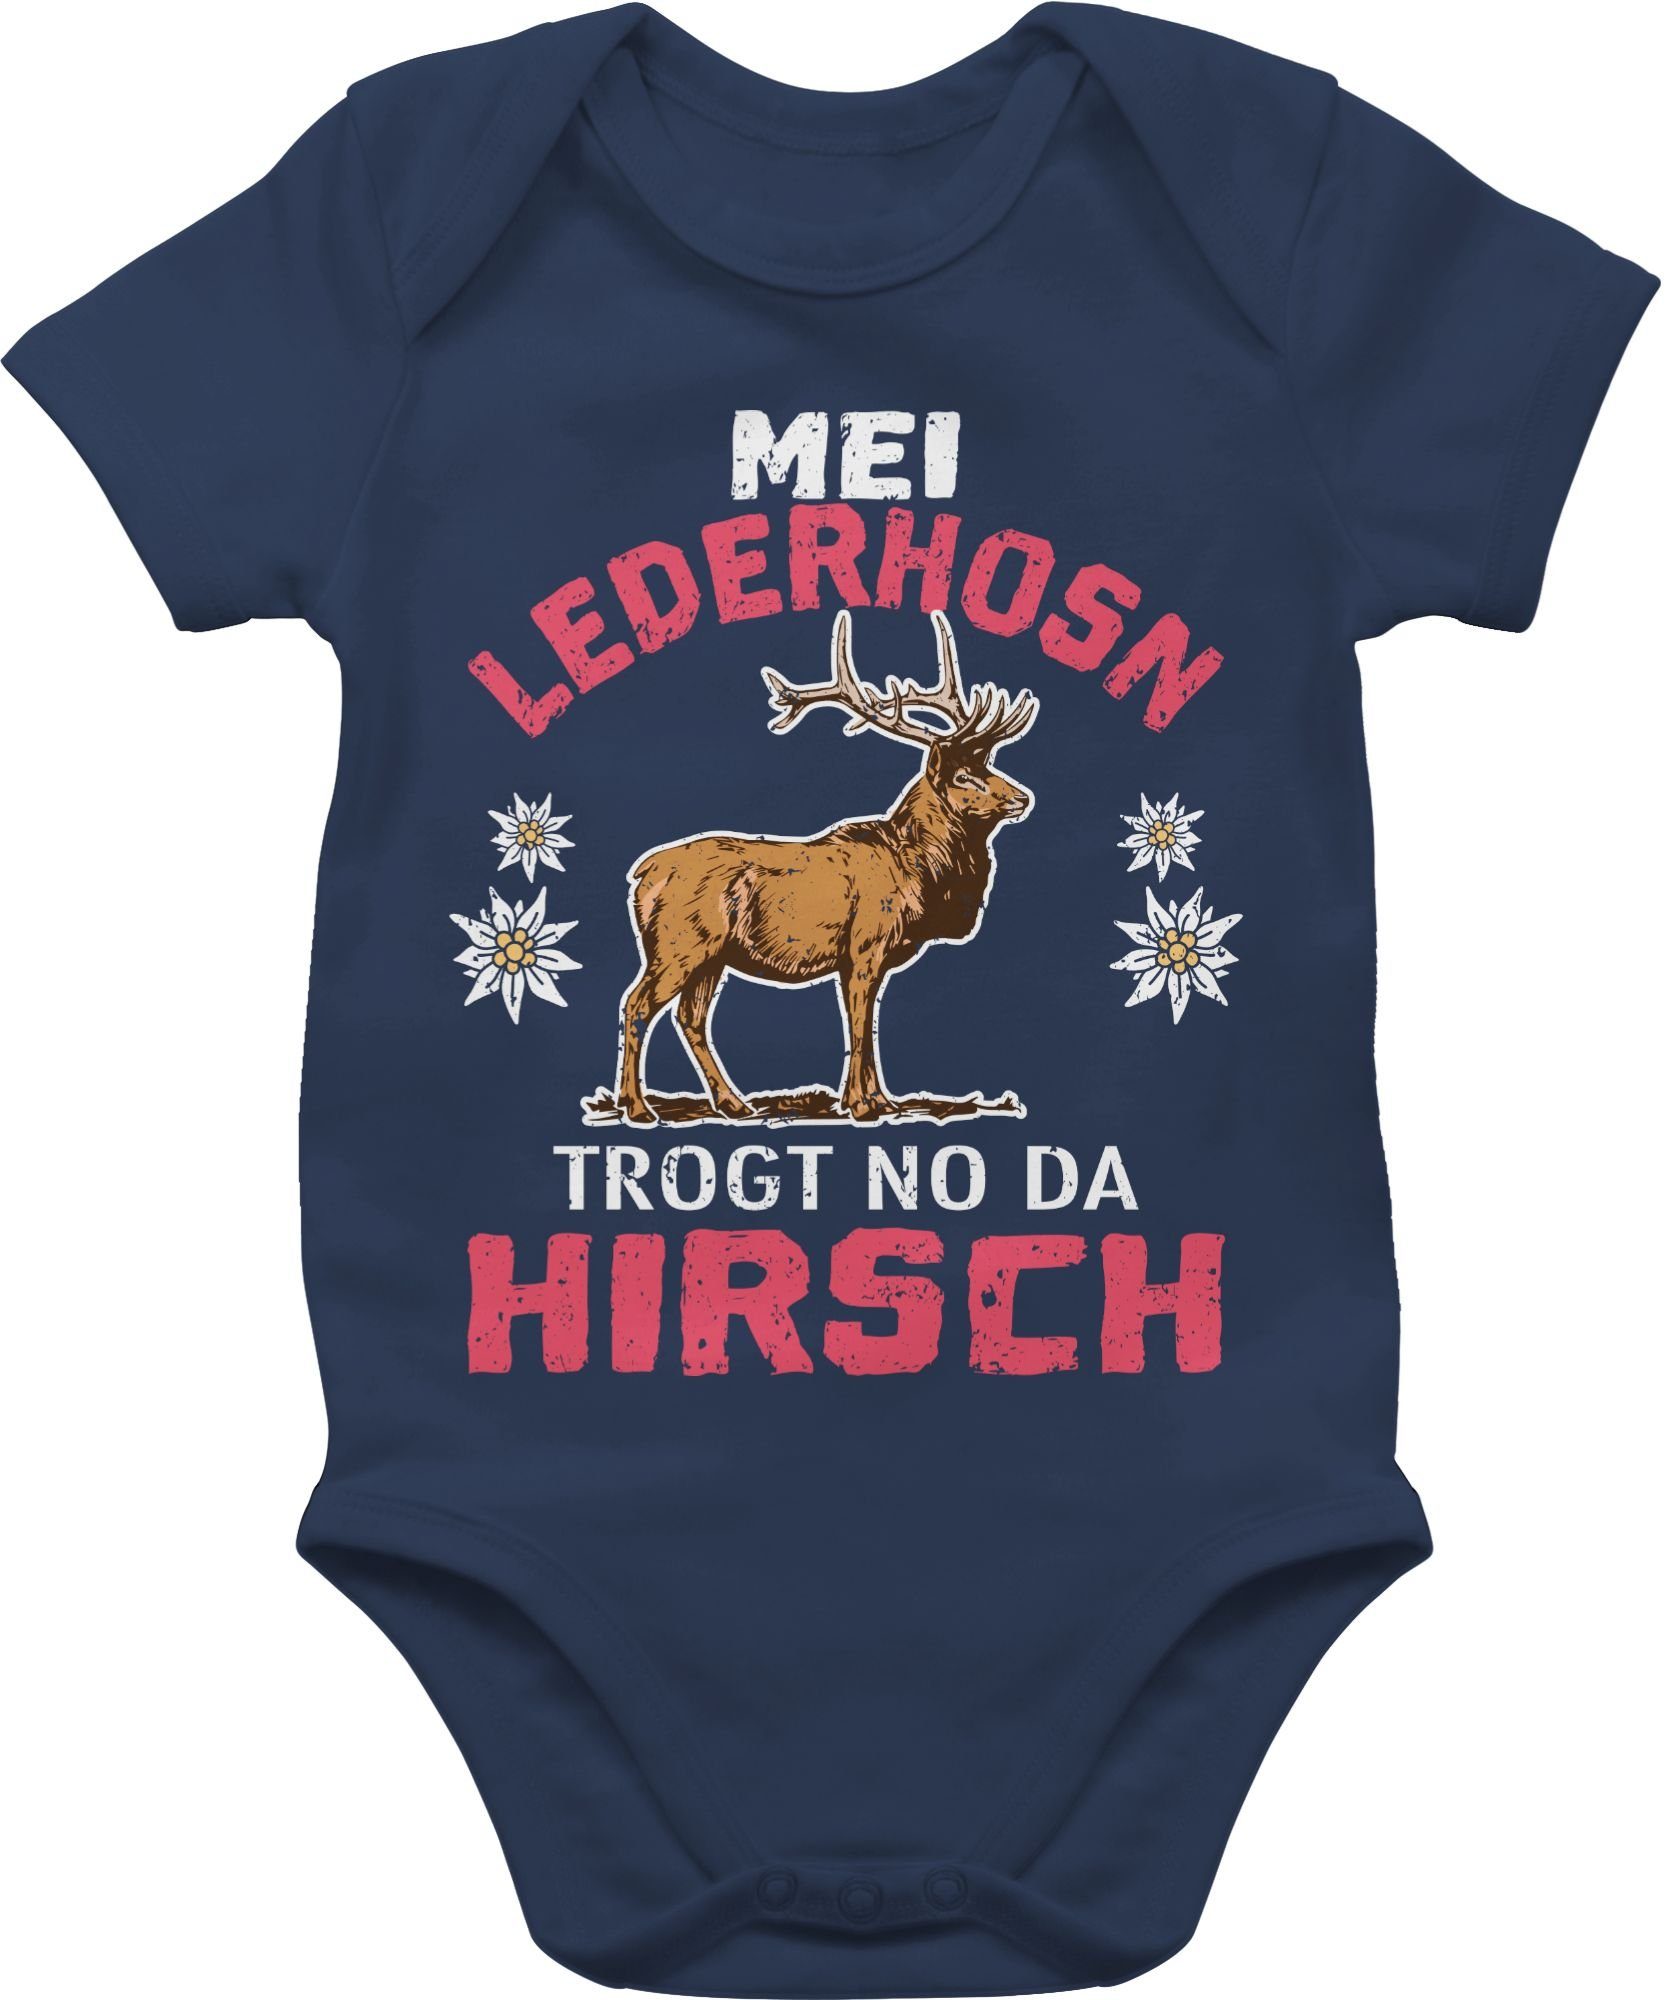 für Mei da Mode trogt Lederhosn Oktoberfest - Hirsch 1 Navy Blau Shirtbody no Shirtracer Outfit weiß/rot Baby